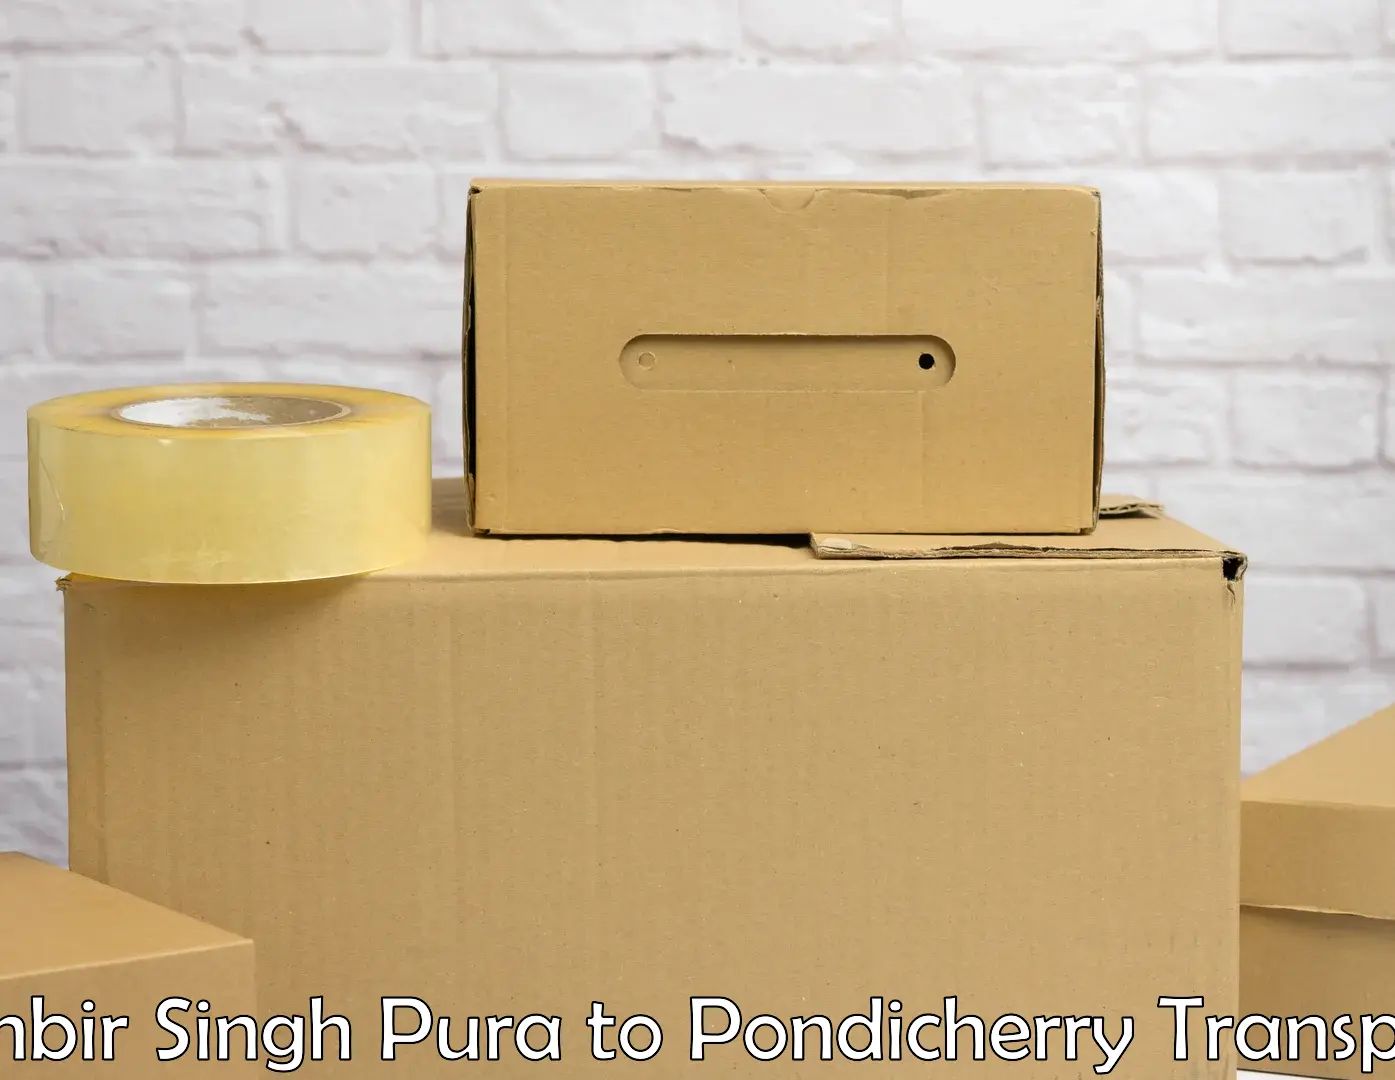 Road transport online services Ranbir Singh Pura to Pondicherry